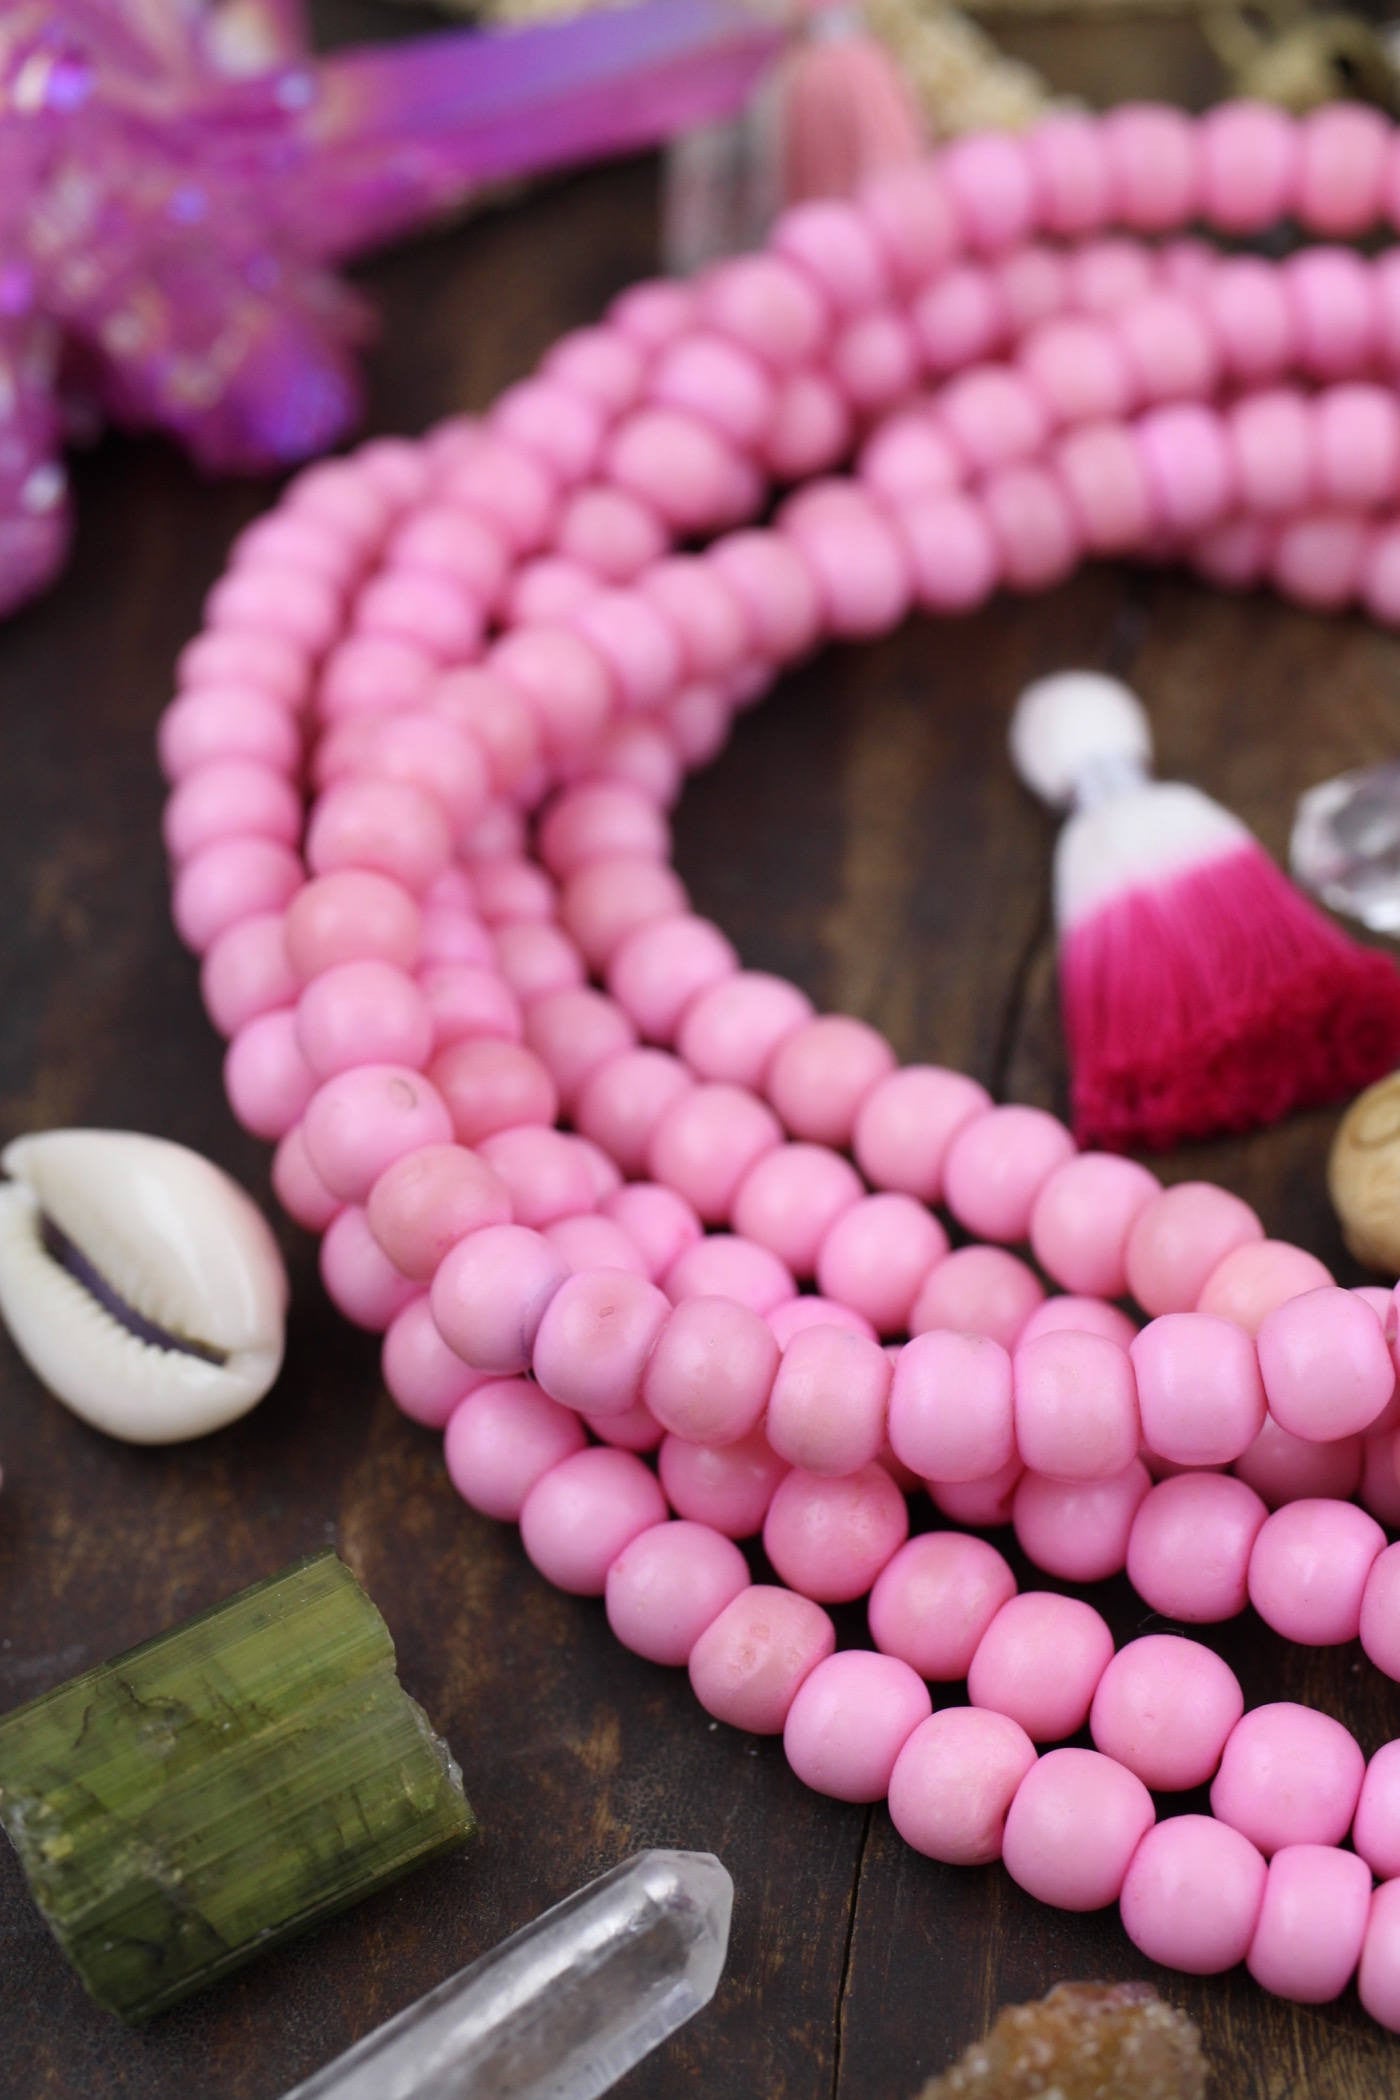 Bubblegum Pink Bone Mala Beads, Yoga Jewelry Making Supply